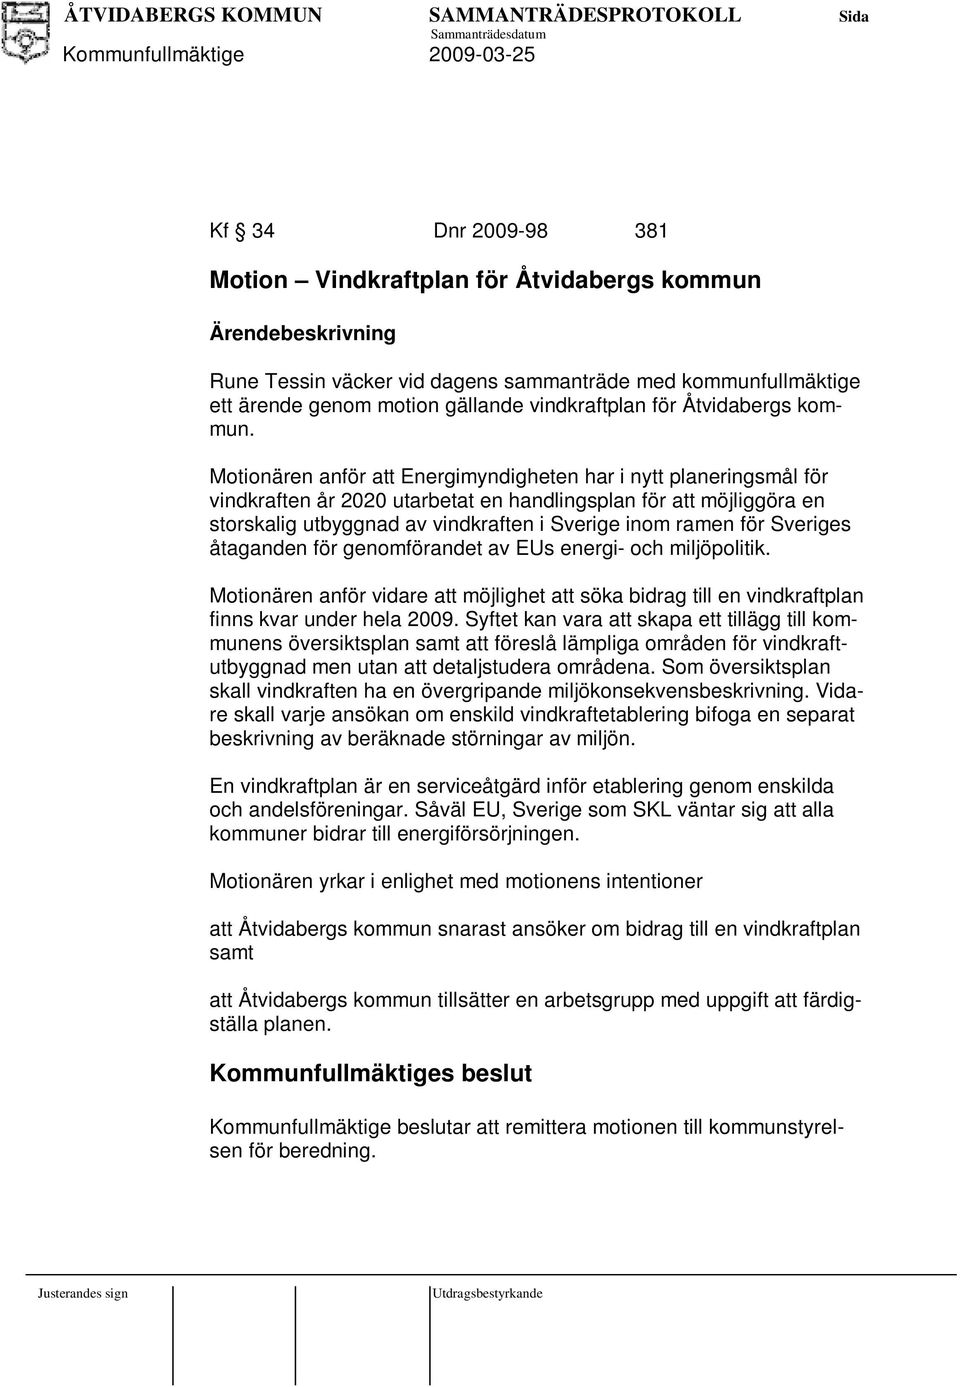 Sveriges åtaganden för genomförandet av EUs energi- och miljöpolitik. Motionären anför vidare att möjlighet att söka bidrag till en vindkraftplan finns kvar under hela 2009.